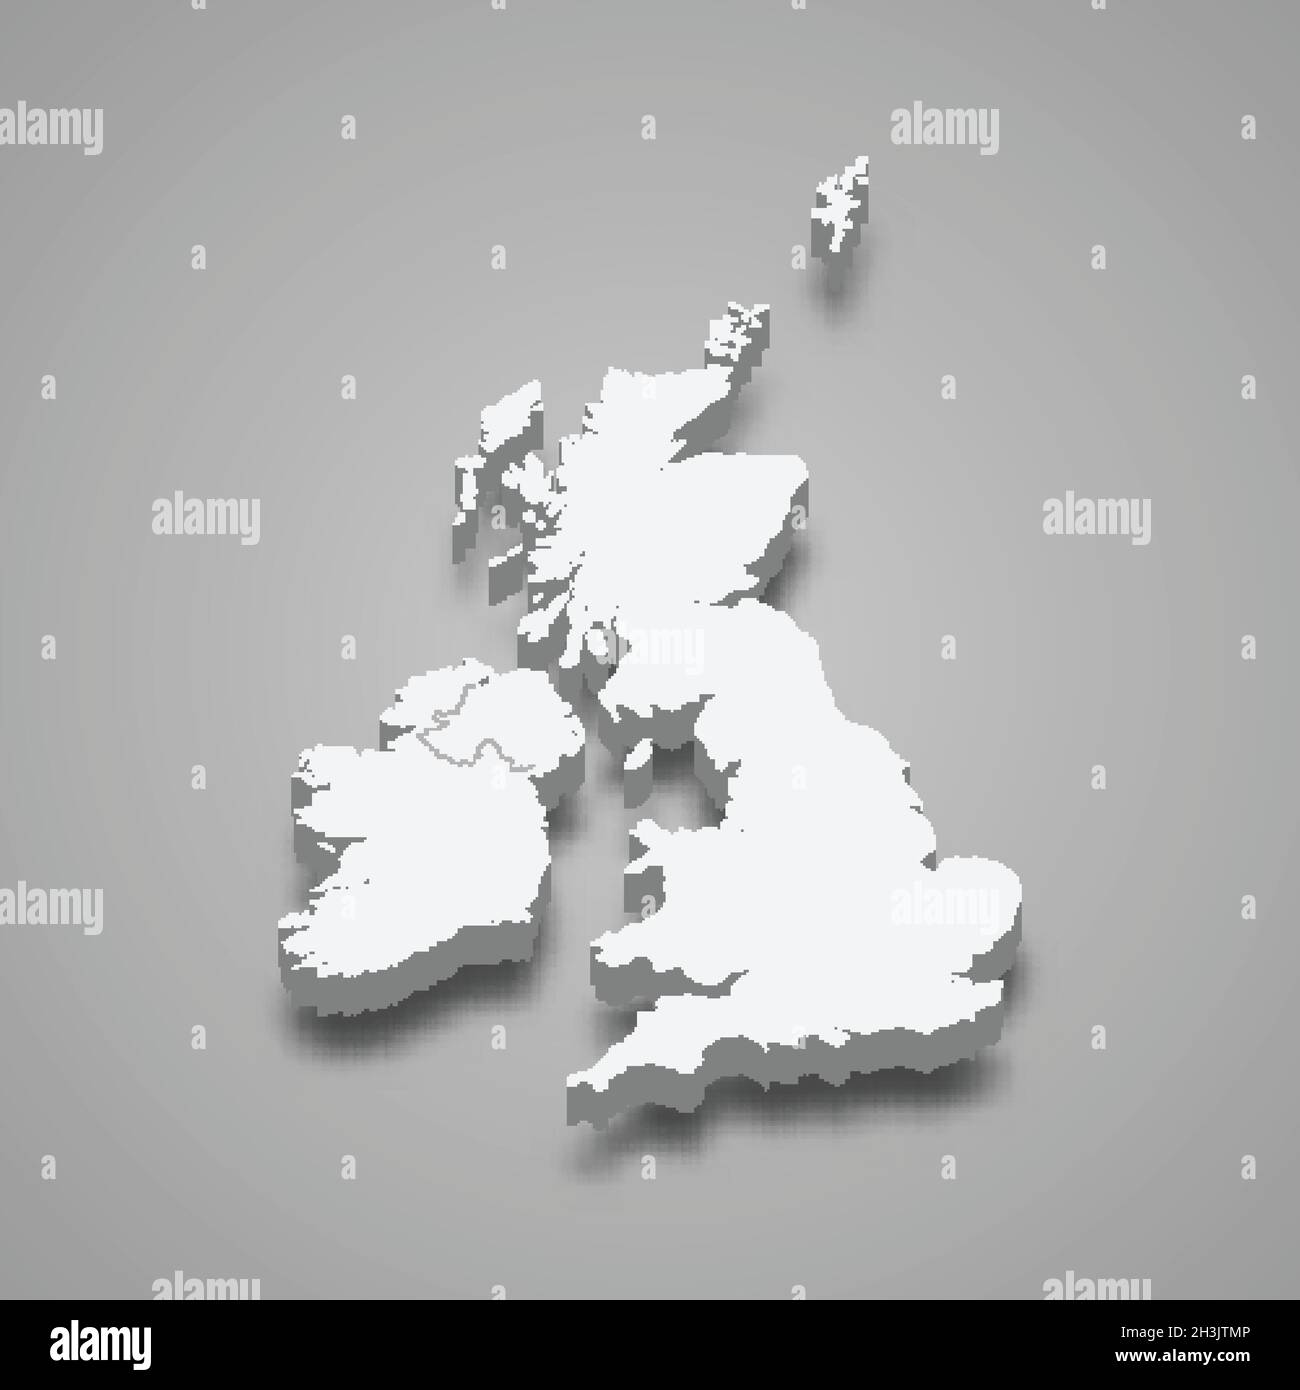 Carte isométrique 3d de la région des îles britanniques, isolée avec illustration du vecteur d'ombre Illustration de Vecteur